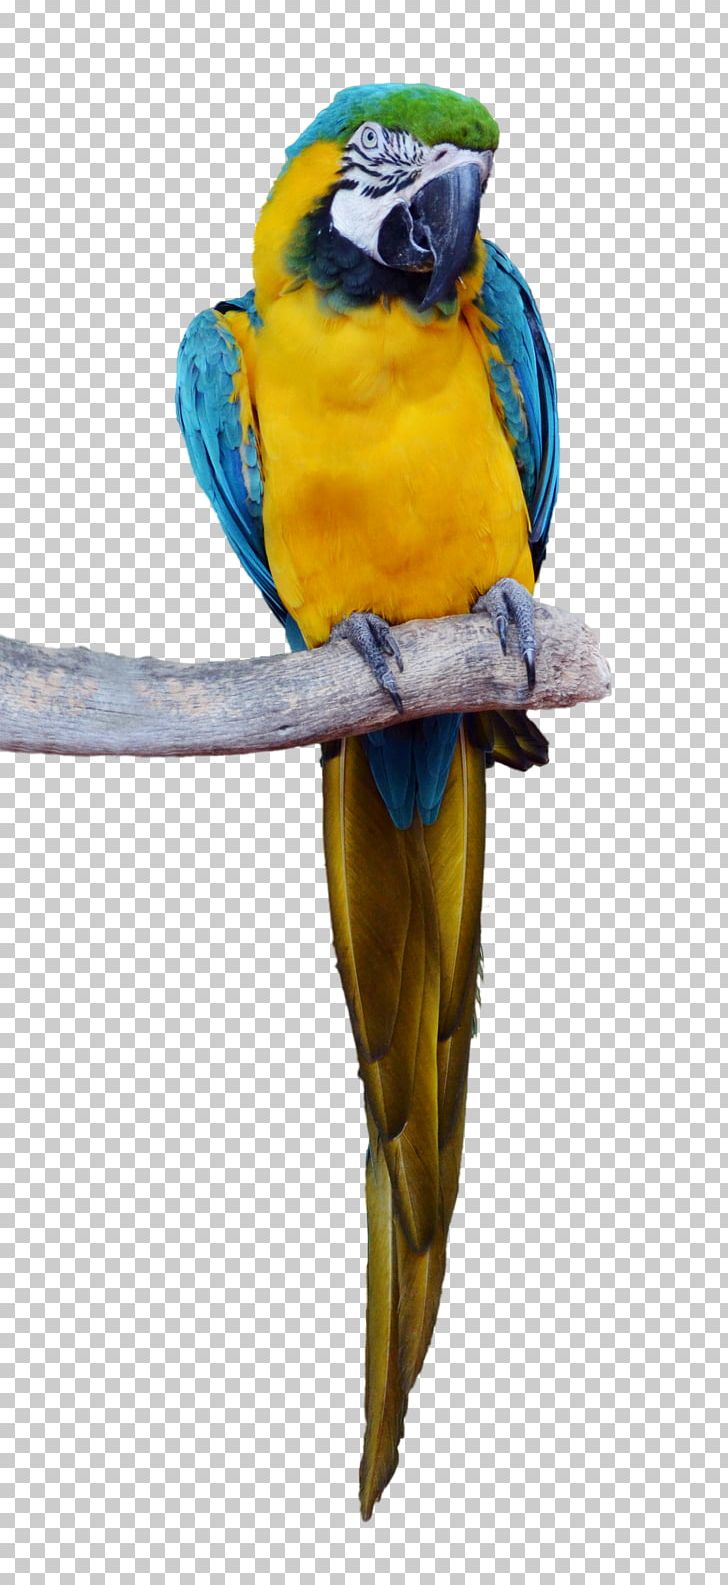 Parrot Bird Macaw Parakeet PNG, Clipart, Animal, Animals, Beak, Bird, Common Pet Parakeet Free PNG Download